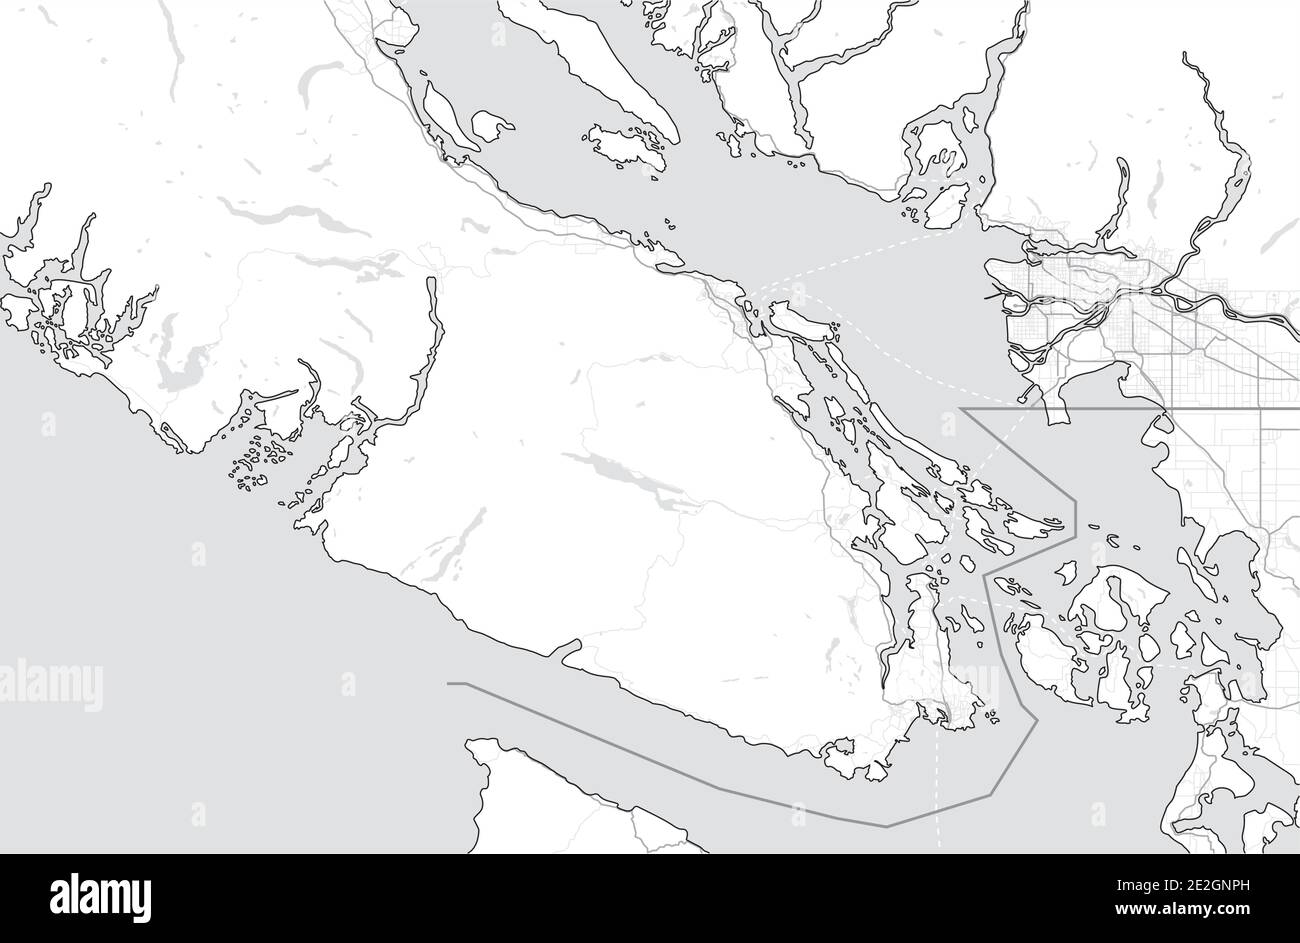 Mappa di Vancouver Island (Nanaimo, Victoria, Tofino) e Greater Vancouver. Canada, British Columbia. Mappa turistica. Semplice mappa in scala di grigi senza testo Illustrazione Vettoriale